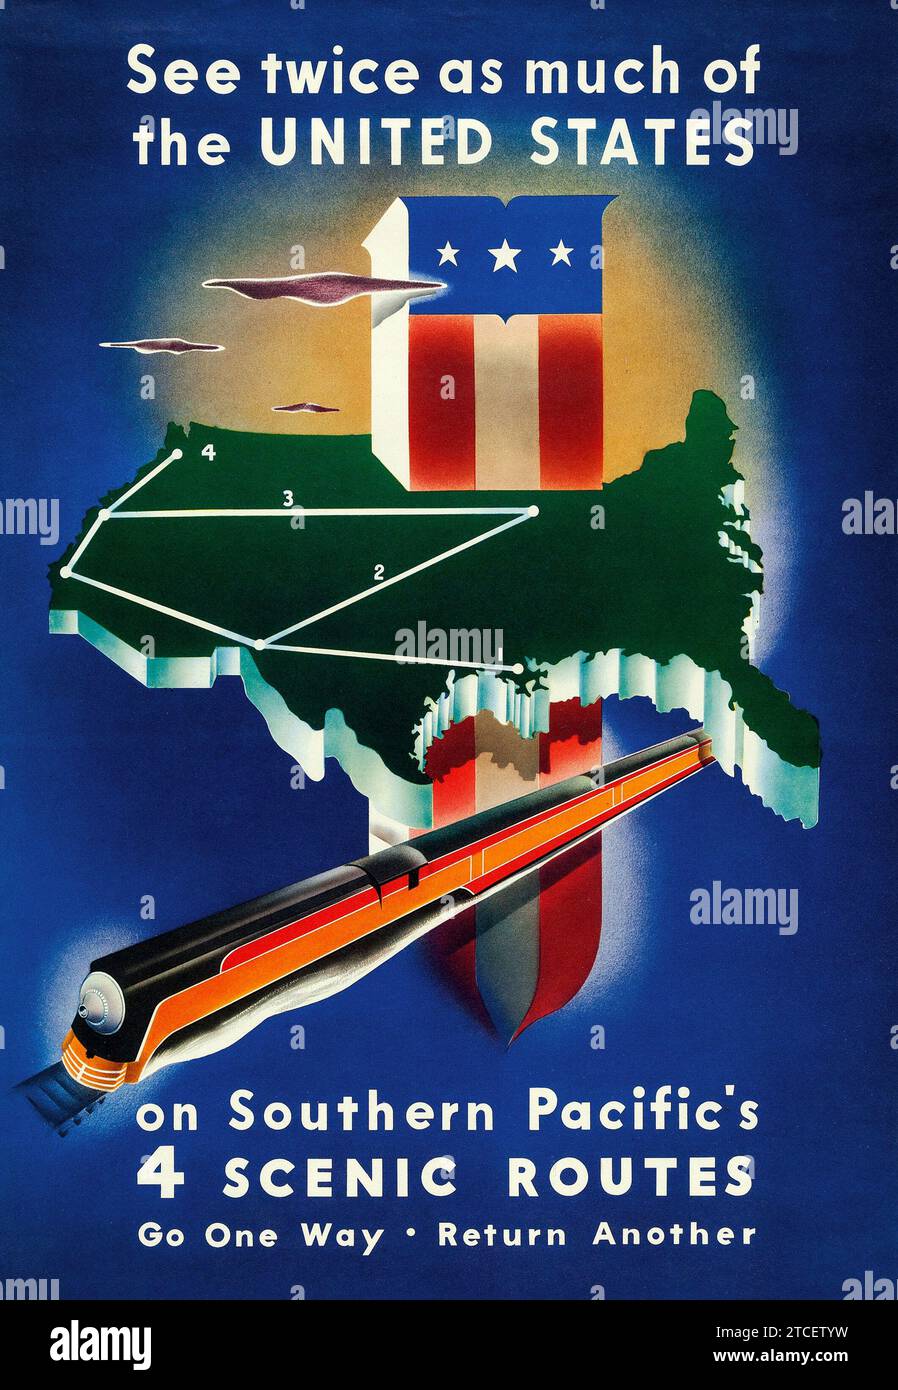 Southern Pacific Railway (1938). Reiseposter für die Vereinigten Staaten – Stanley Brower Kunstwerk – 4 malerische Routen Stockfoto